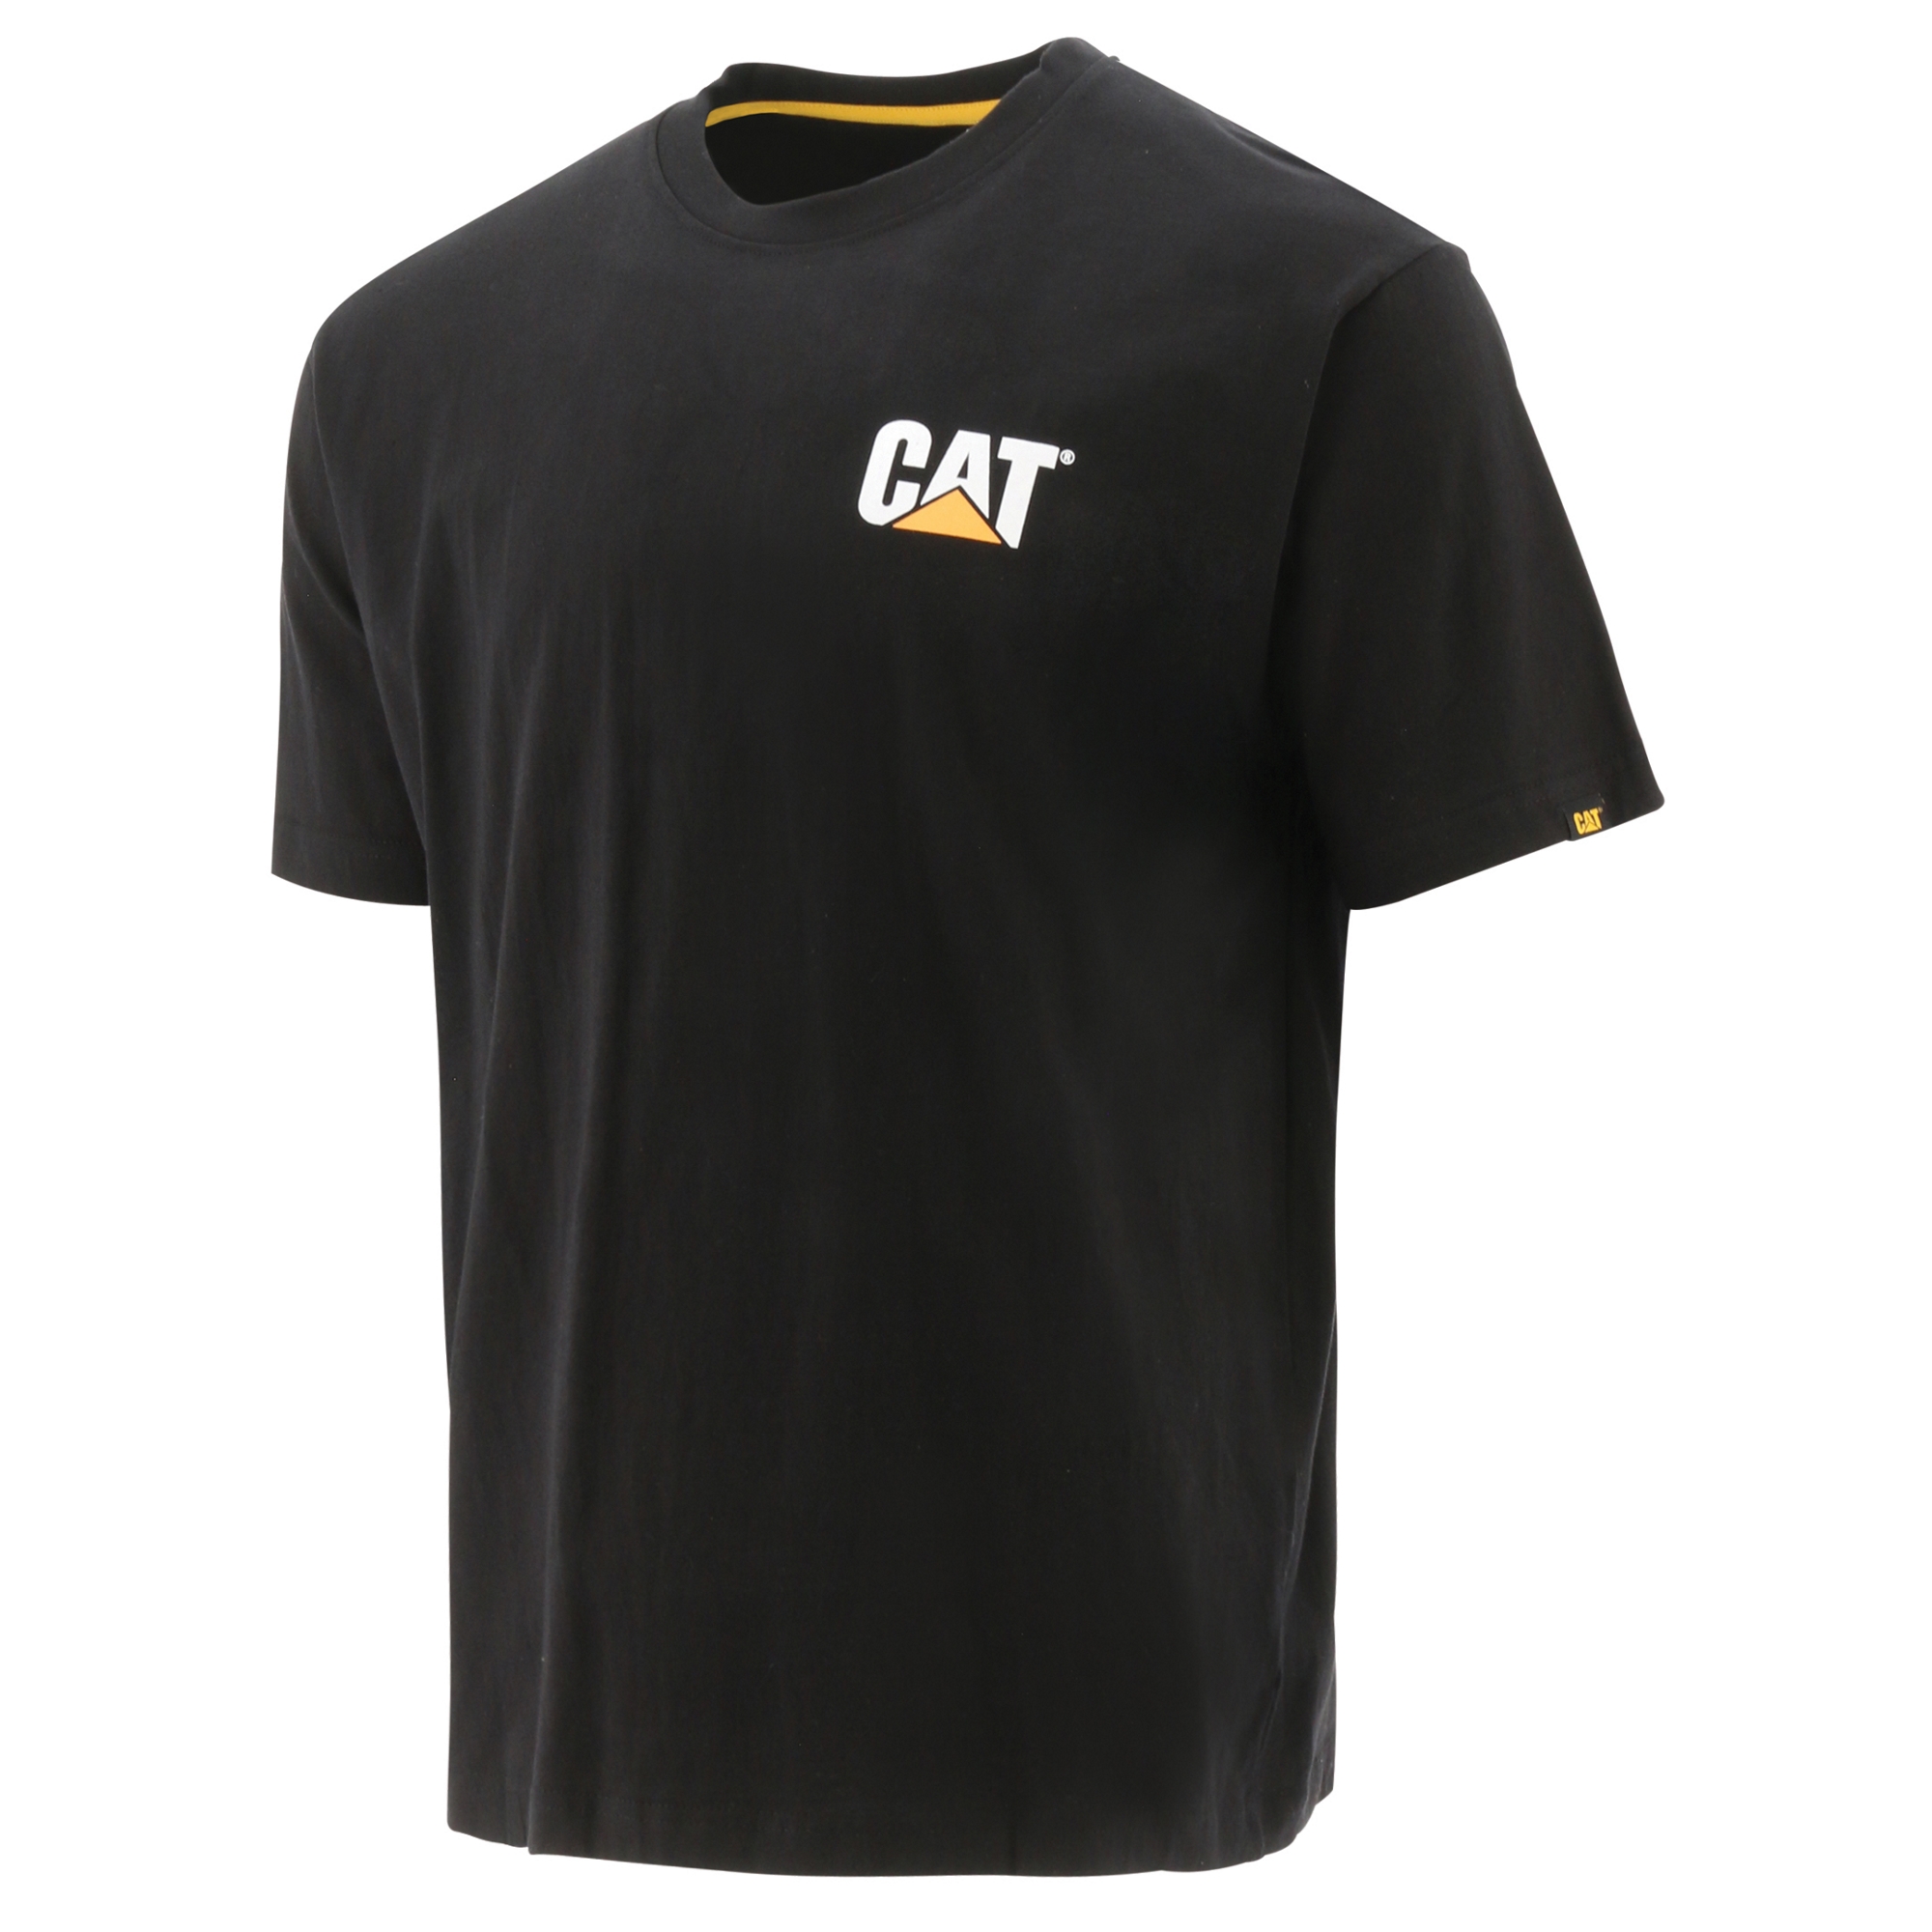 Мужская футболка с коротким рукавом торговой марки Caterpillar, аксессуары для одежды